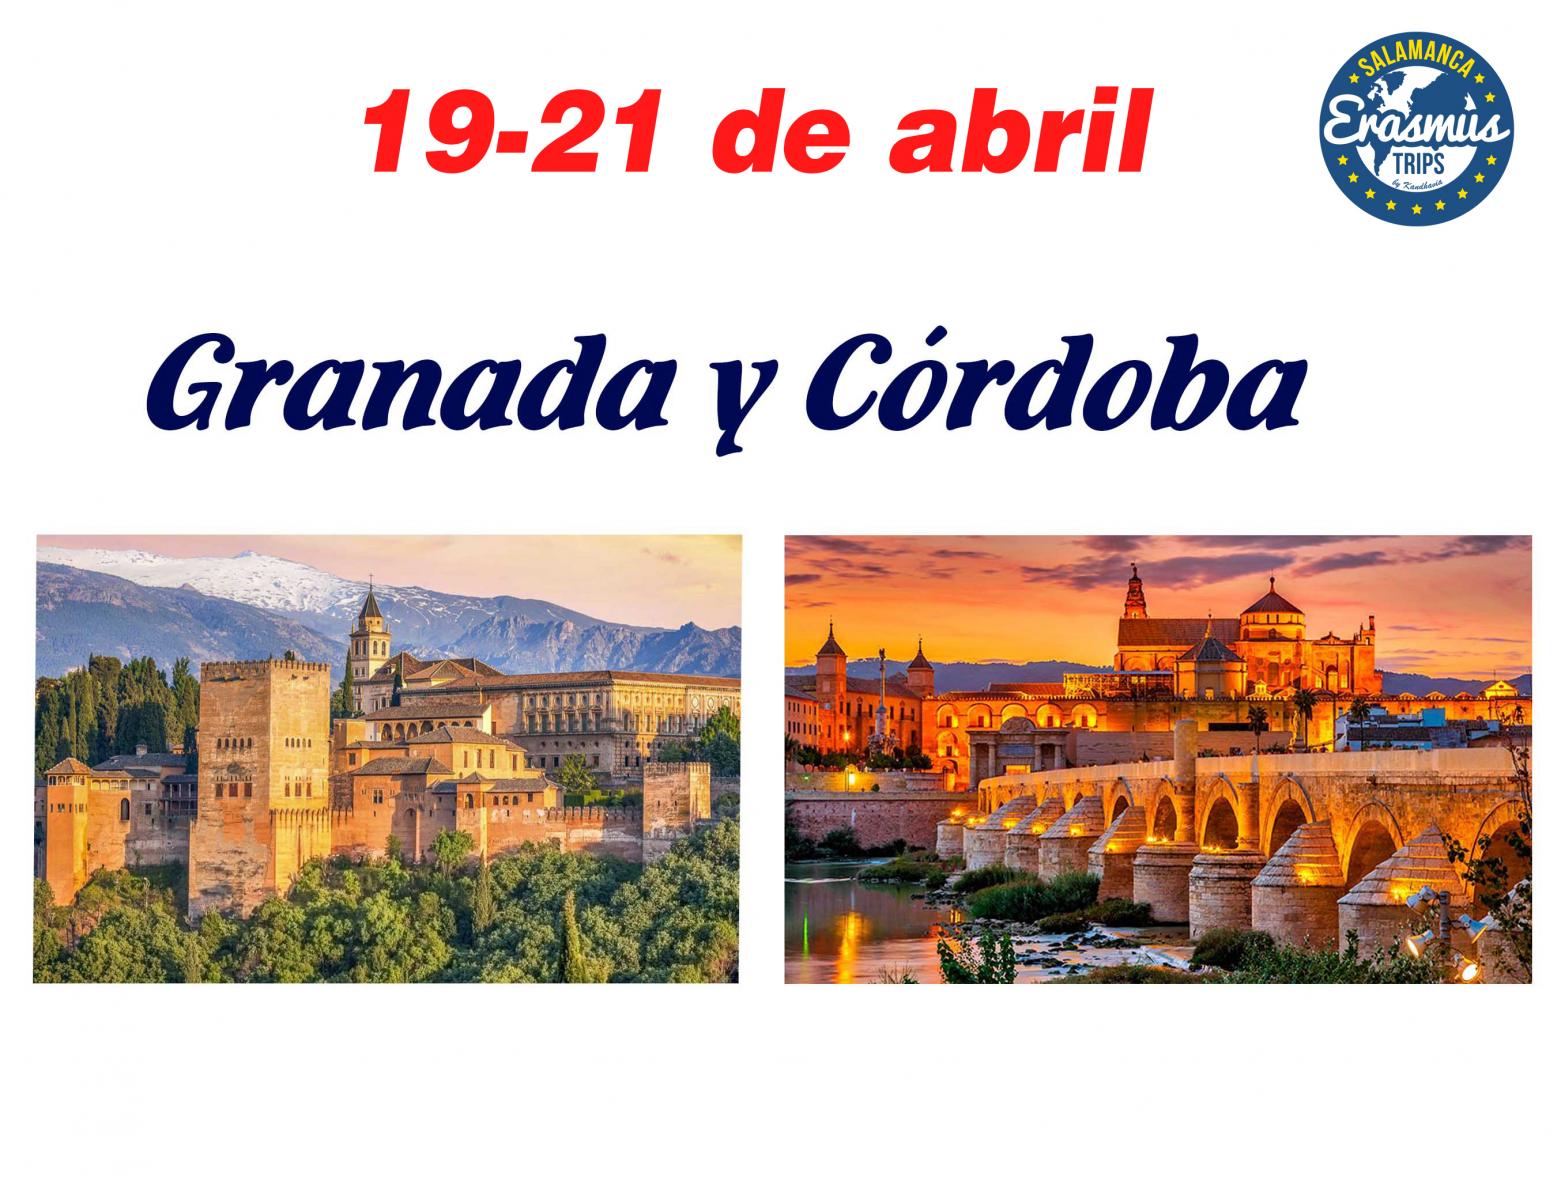  <strong> Granada y Crdoba